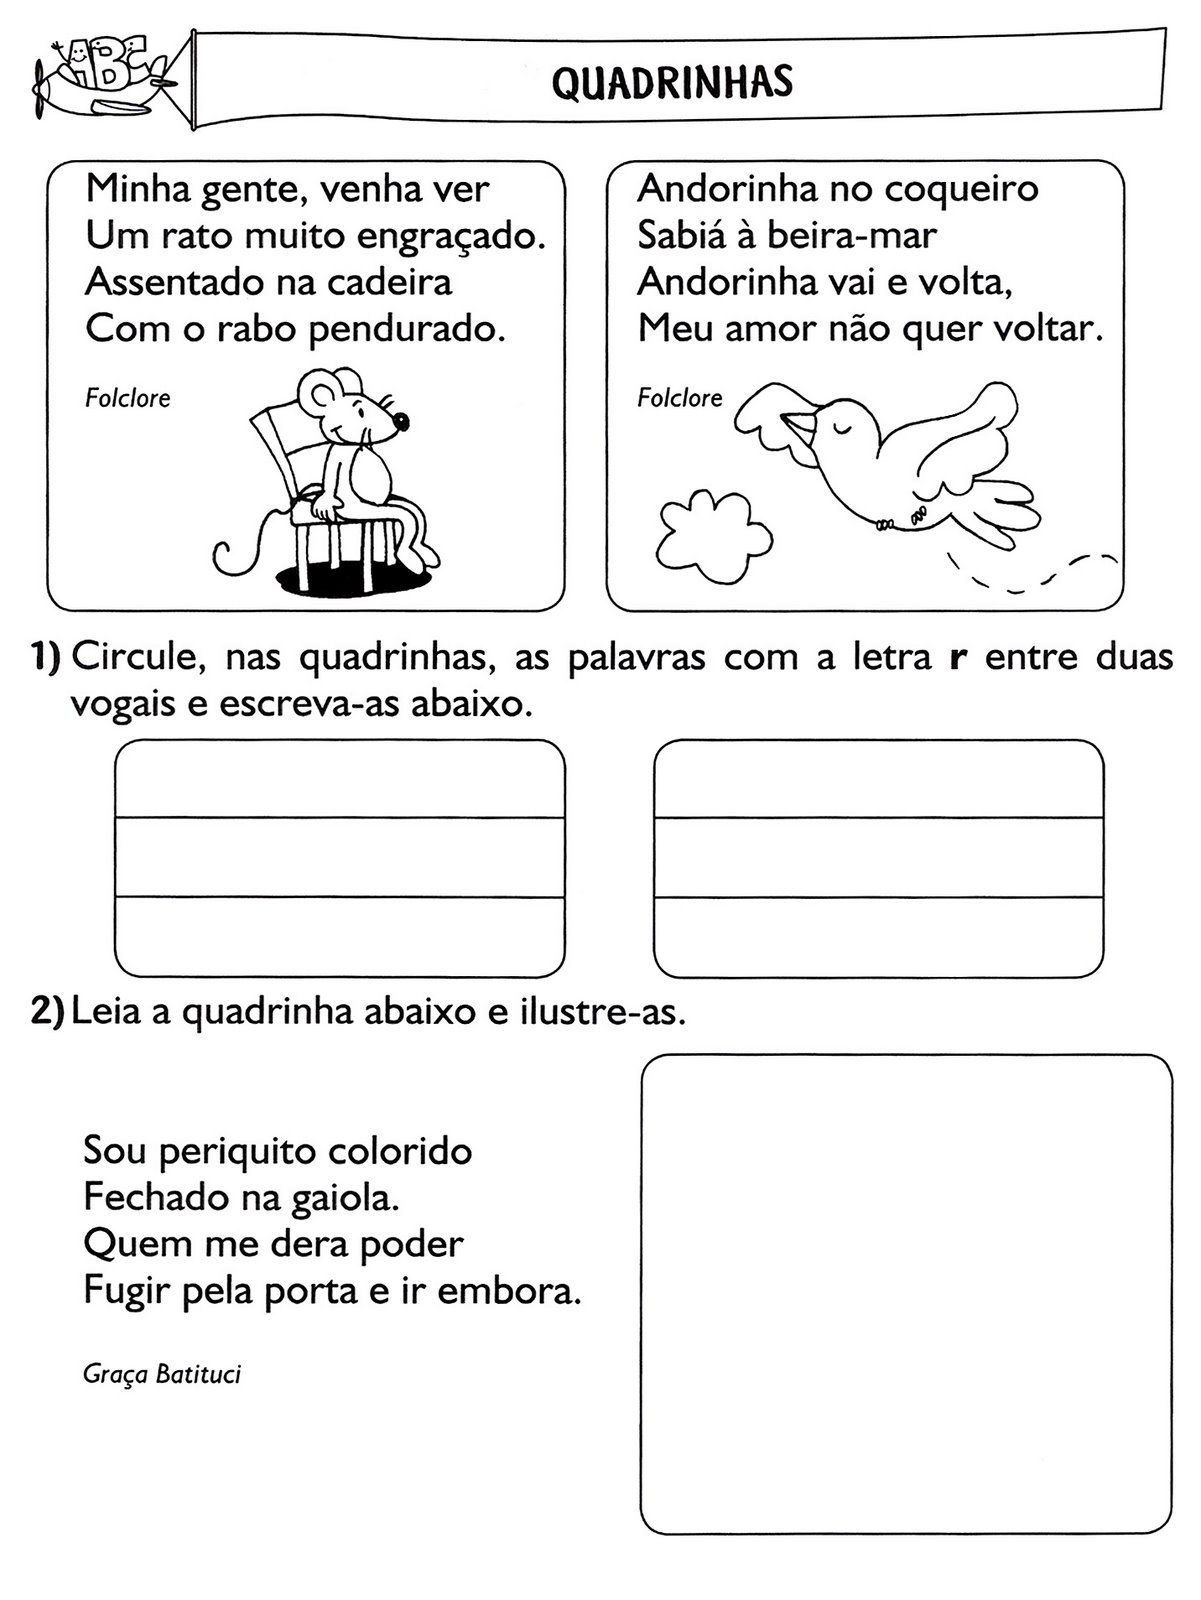 www.ensinar-aprender.blogspot.comquadrinhas ilustradas - leitura e interpretaçaõ